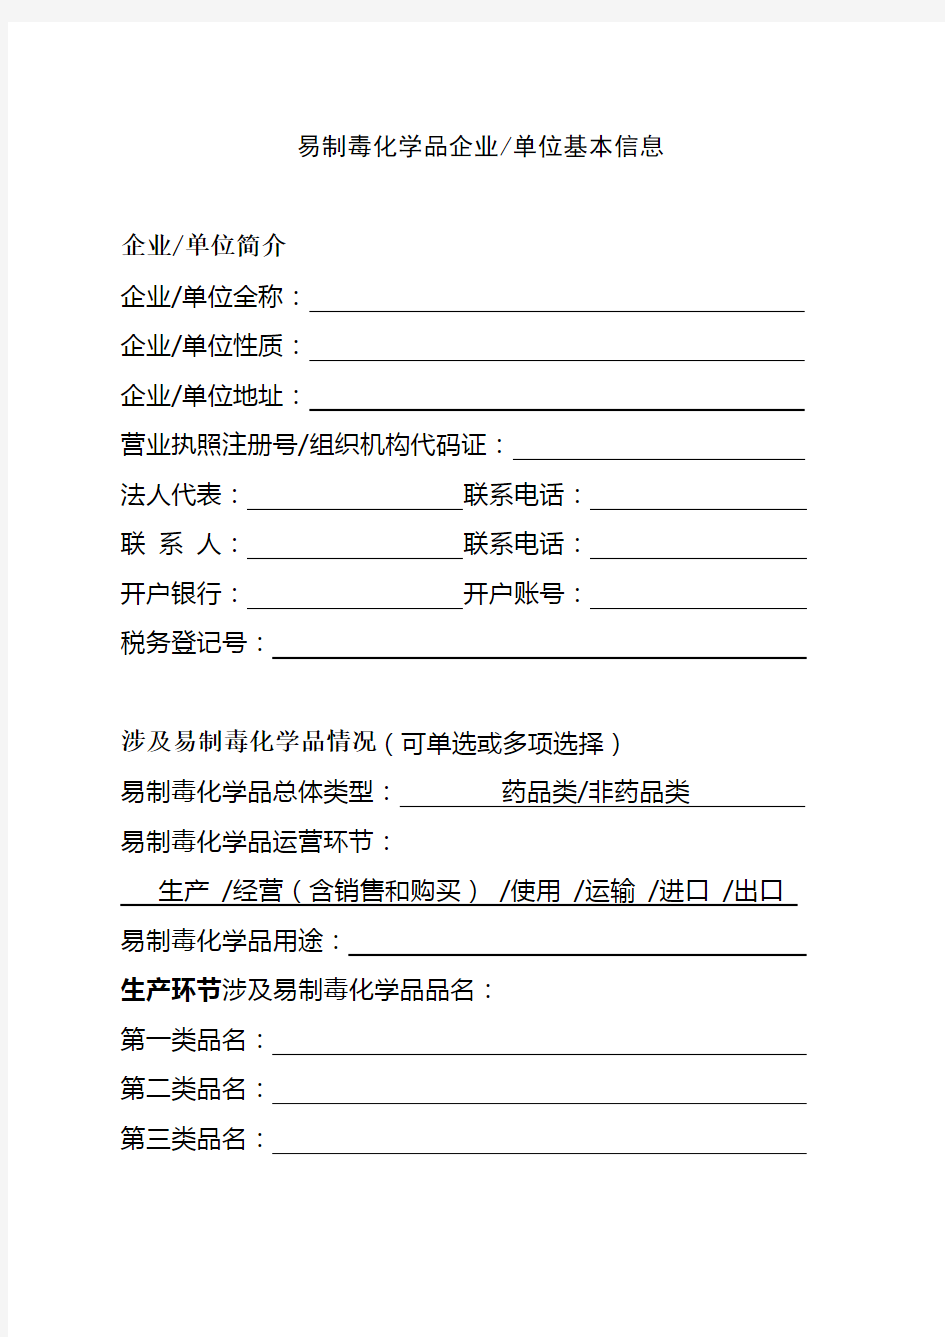 黑龙江省易制毒化学品企业年度报告样表